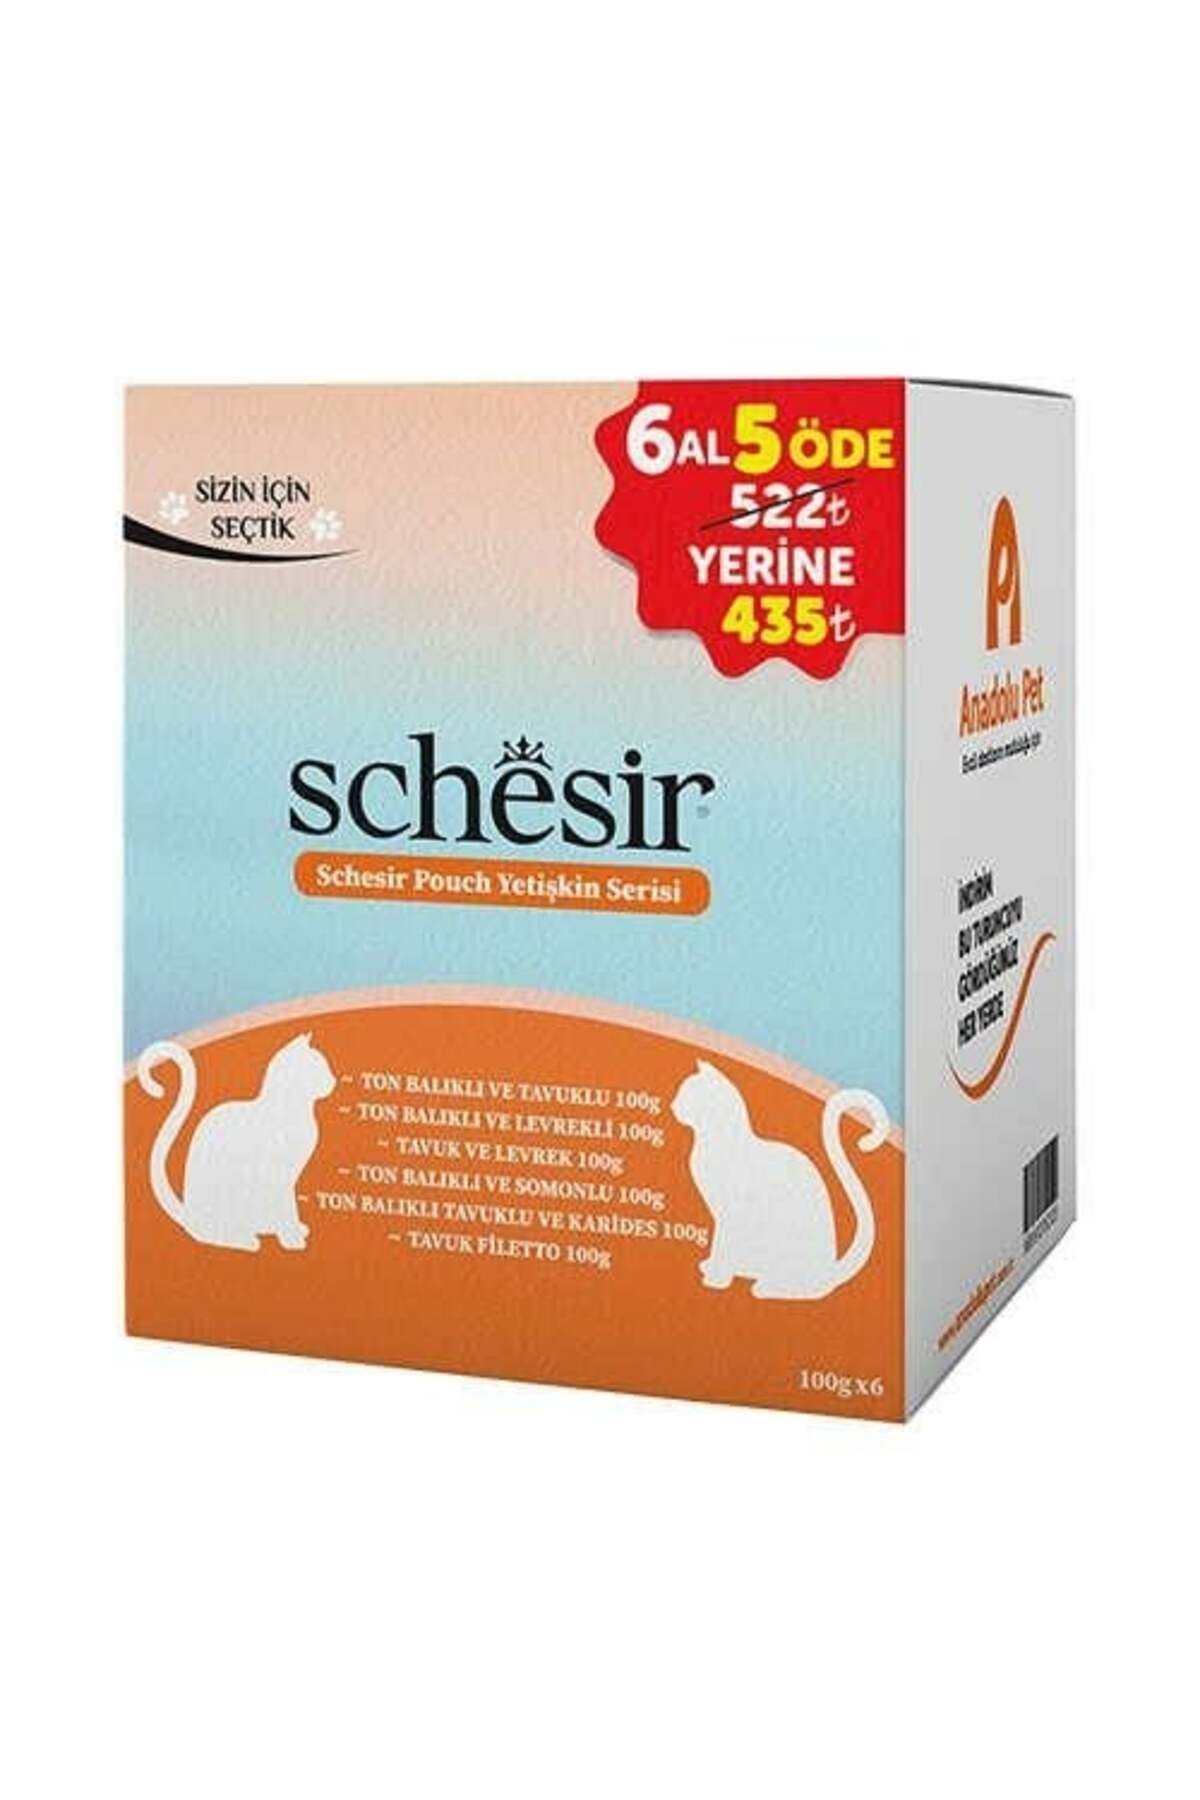 Schesir Pouch Yetişkin Serisi Kedi Maması 100gr (6 Al, 5 Öde)